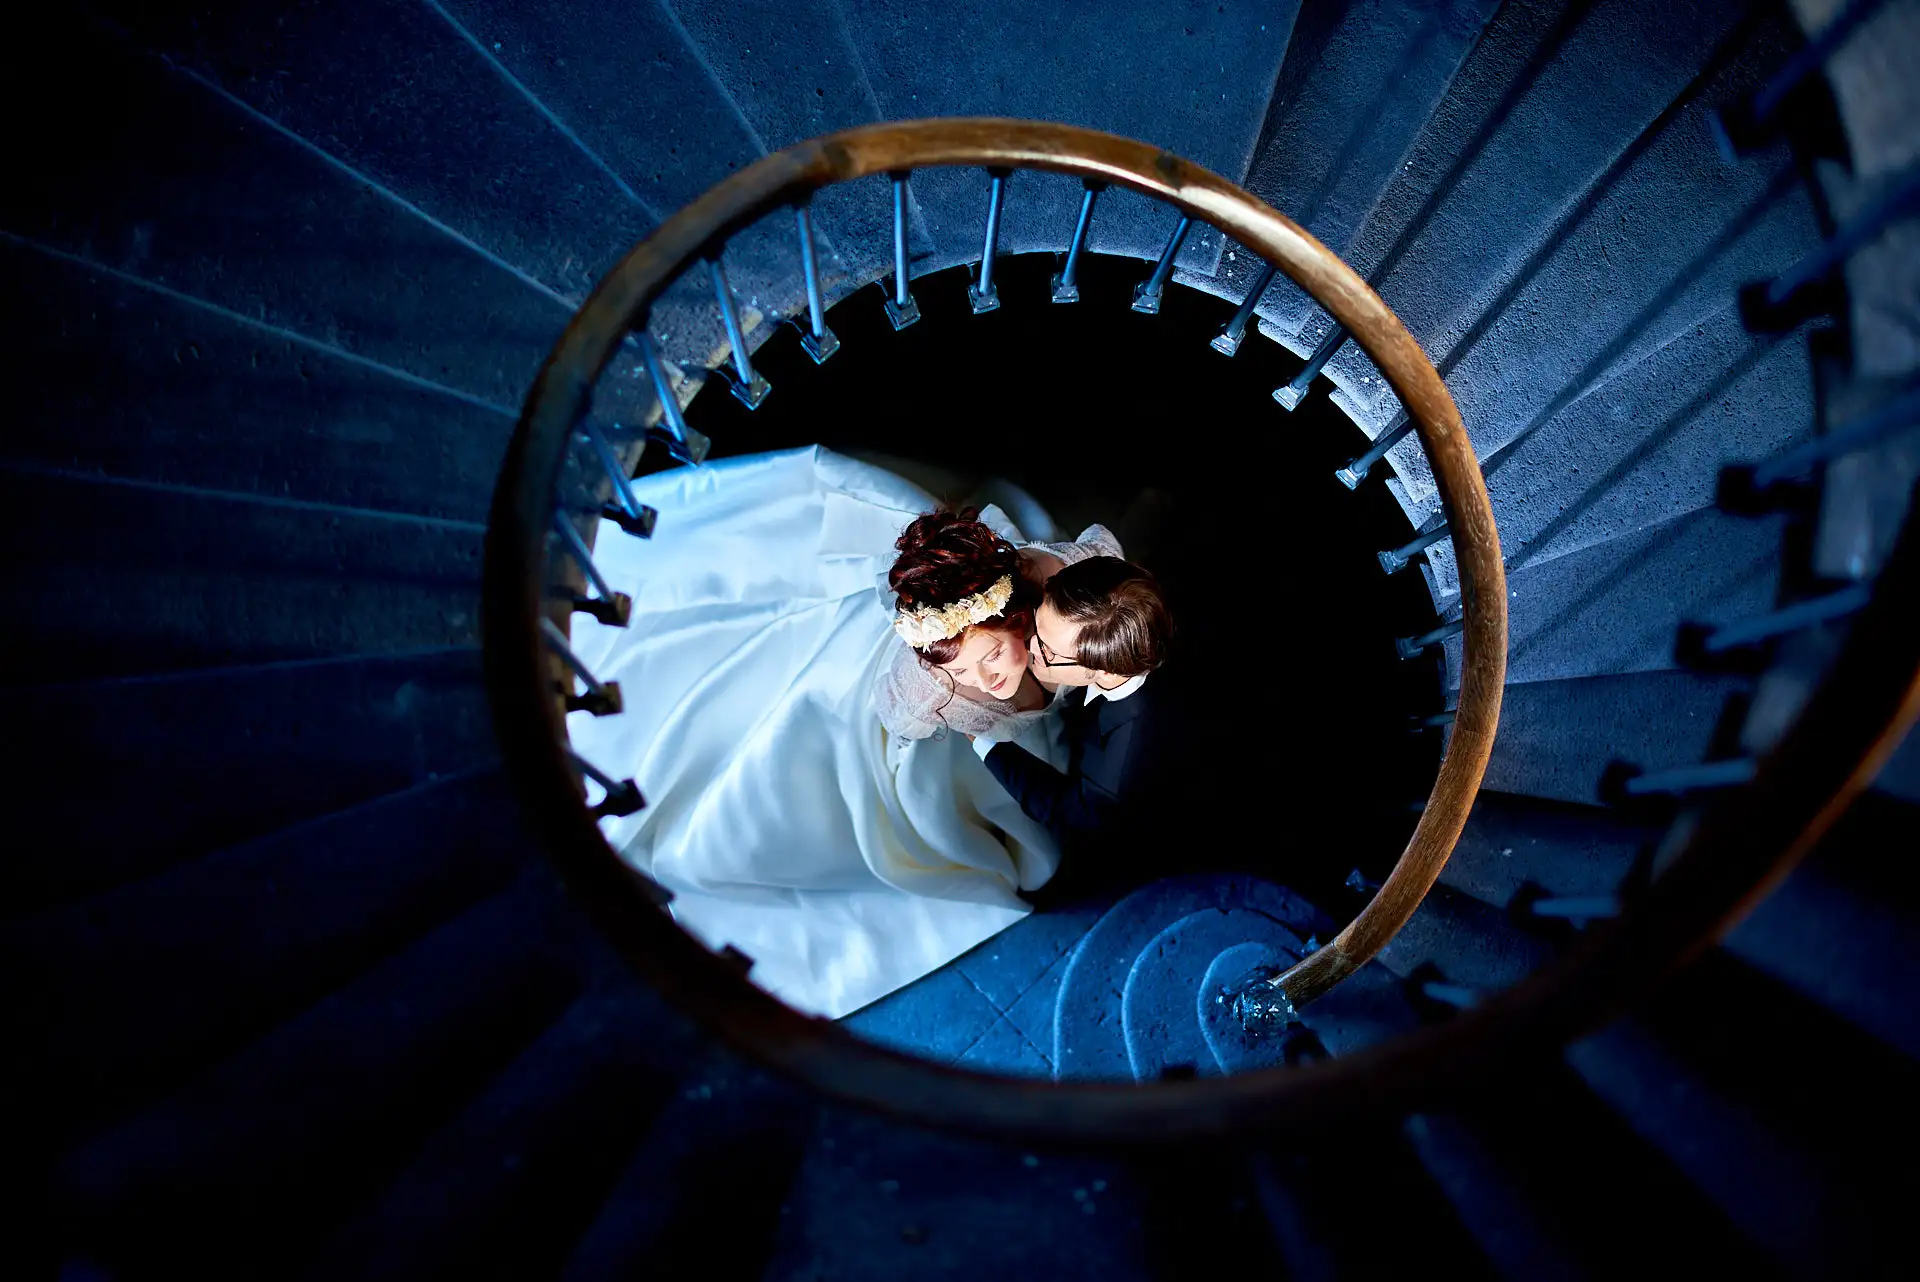 chateau de miremont - photographe mariage clermont ferrand lyon - séance couple escalier colimaçon